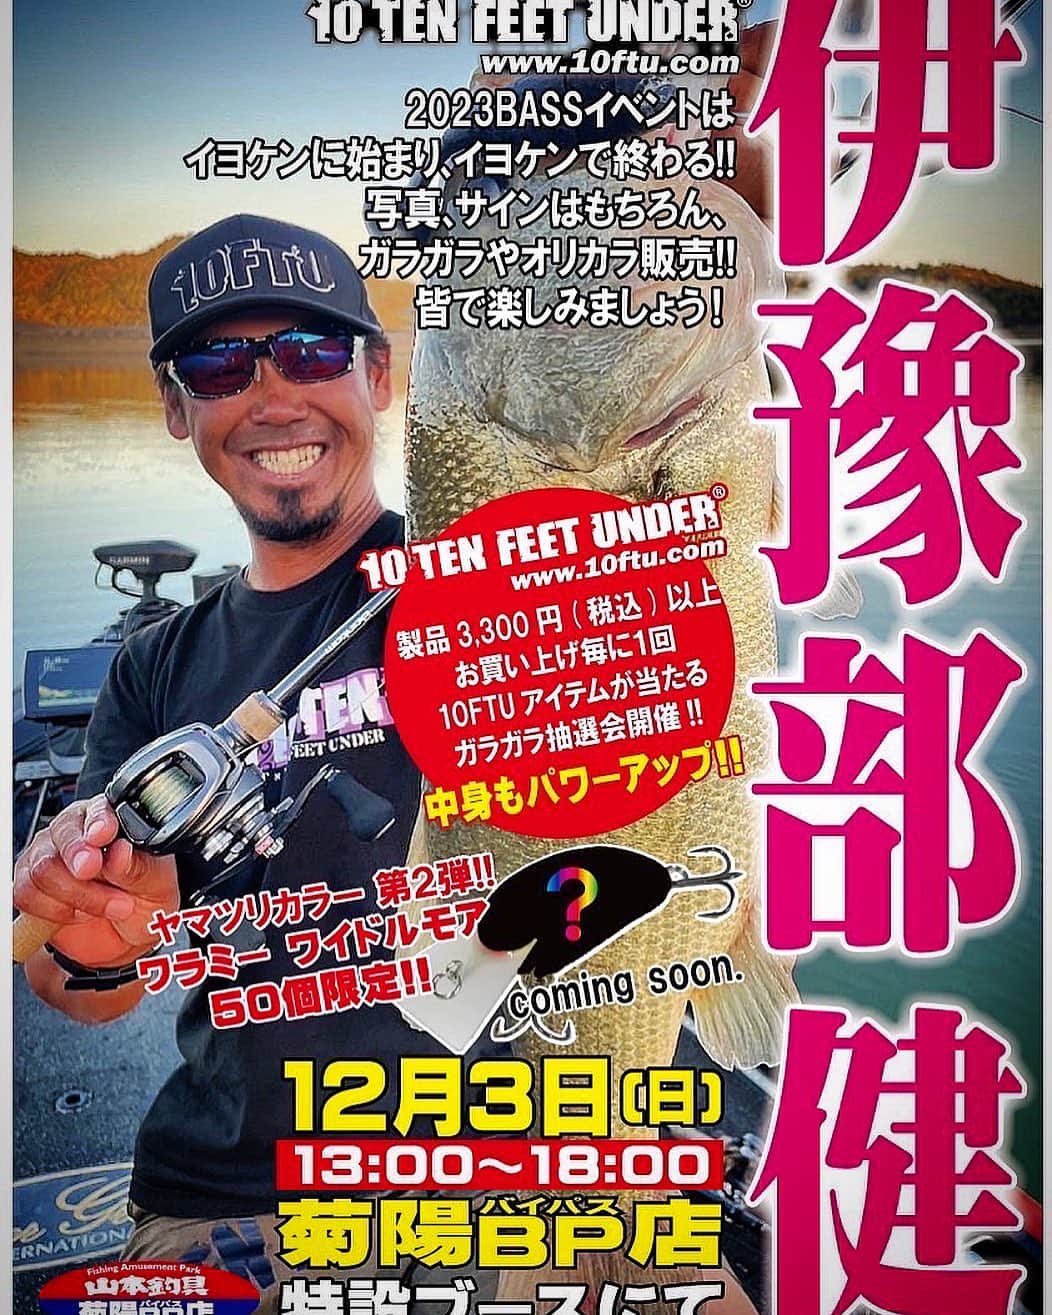 伊豫部健のインスタグラム：「いよいよ今週末は熊本県の山本釣具センター菊陽バイパス店にて10FTUイベント開催です💪 @yamamototsurigucenter   久しぶりの九州なんで、ワクワクが止まらない‼️ 今回はワイドルモアのヤマツリカラーを限定販売します^ ^ さすがはヤマツリさんだけに、元祖を持ってきた伝説的カラーをワイドルモアに施してくれました♪ 是非、今週末は山本釣具センター菊陽バイパス店さんに遊びに来てくださいね〜^ ^  @ken_iyobe  @10ftu_kiob_smpfishing  @10tenfeetunder_kiob  @se9rets  @backss_lureshop  @zhanna_smpfishing  @ge_one.official  @mazda_jp  @sunline_japan  @gancraft_taka  @b.b.rush  @hayabusa_bass  @zpijapan  #LUCK @irogumi.ceo  @kingwolf.1969  @shimanofishing_jp  @gary_international_kk  @ringstar_1889  @talex_fishing  @sadayoshi_sugiyama  @aroma_coffee_roastery  #ラインアート @kousan_10ftu  @30_taxi  @regar_marine_japan  #iyoken #kiob #Bin5 #イヨケン #伊豫部健 #10ftu  #10tenfeetunder #10ftuスーパーディーラー #セキュレッツ #バックス #イヨケンコーヒー #10ftuチャンネル #イヨケンカレー #ヤマツリ #山本釣具センター菊陽バイパス店」